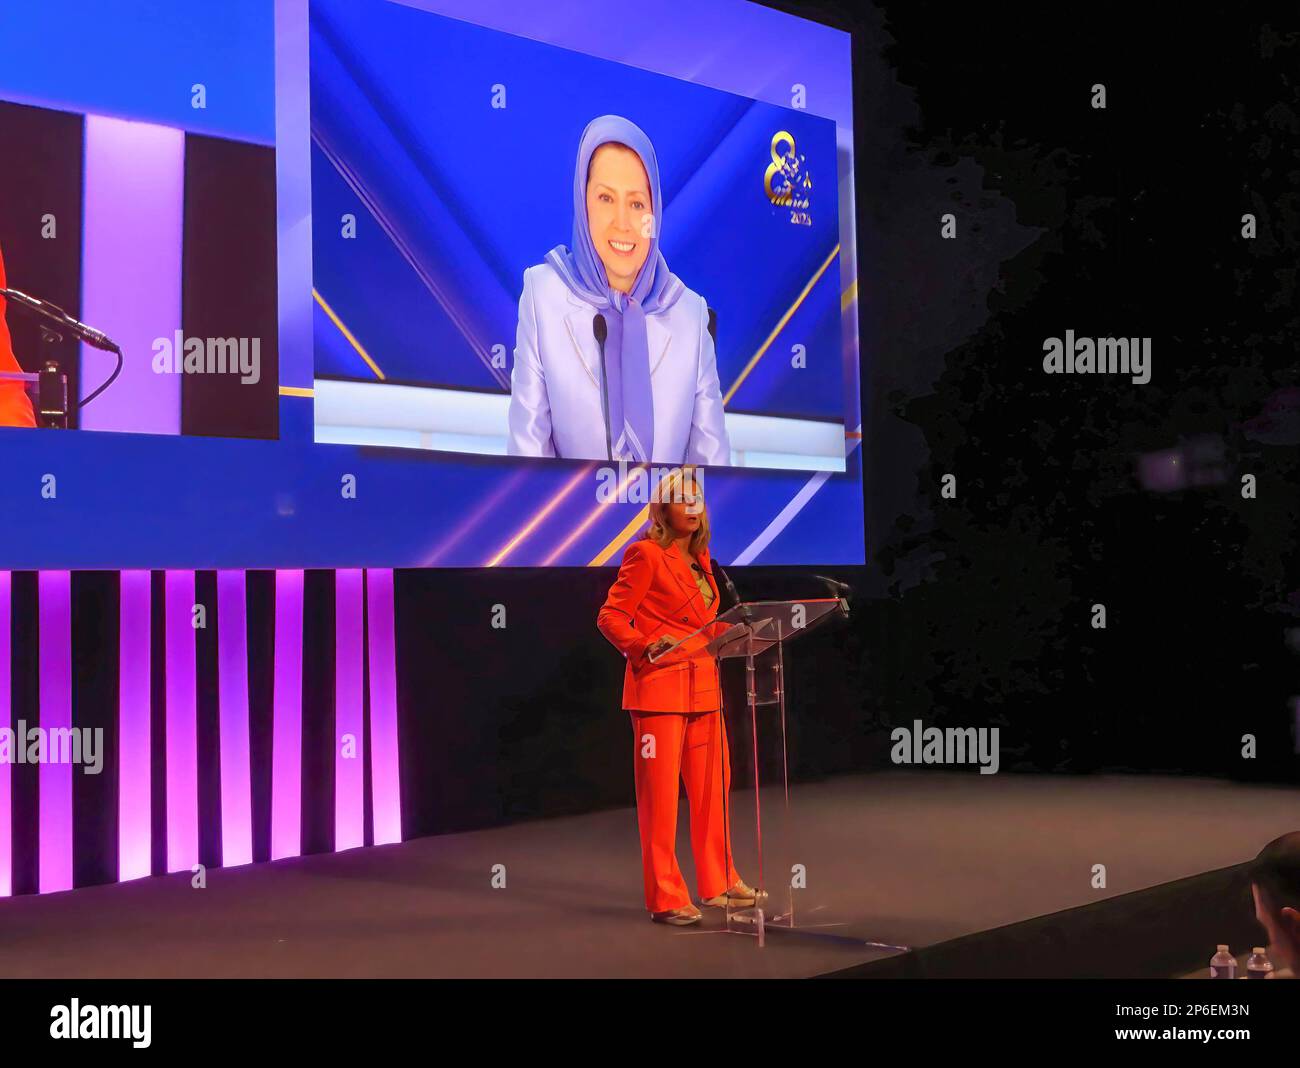 Kathleen Depoorter, Mitglied des belgischen Parlaments, lobt den Nationalen Widerstandsrat Irans, insbesondere ihr Engagement für die Gleichstellung der Geschlechter und die Freiheit während einer Konferenz, die vom iranischen Widerstand ausgerichtet wurde. Renommierte Führerinnen aus Europa und den USA nahmen an der Konferenz Teil. Der Schwerpunkt lag auf der führenden Rolle der Frauen in der iranischen Volksrevolution und ihrem Kampf gegen das frauenfeindliche Regime im Iran. Hauptrednerin war Maryam Rajavi, gewählte Präsidentin des Nationalen Widerstandsrates Irans. Stockfoto